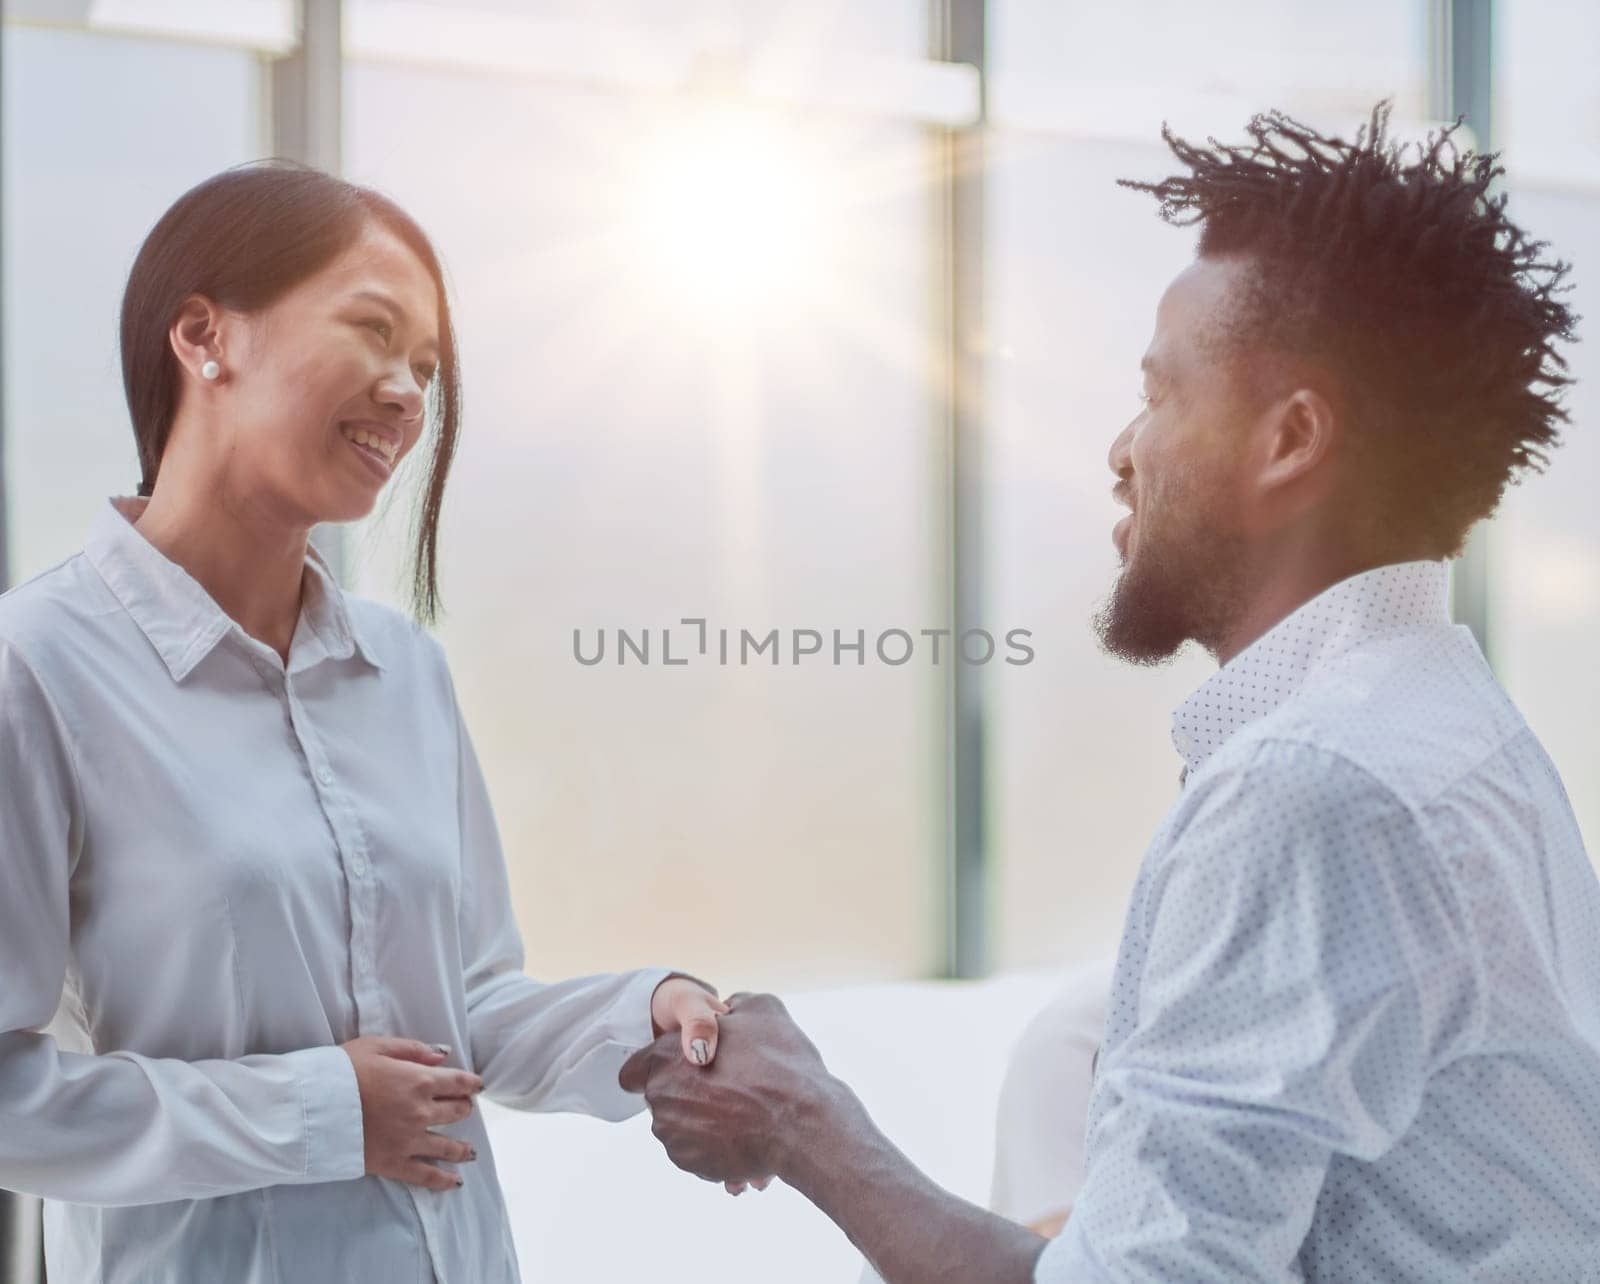 Handshake between business man and woman indoors.